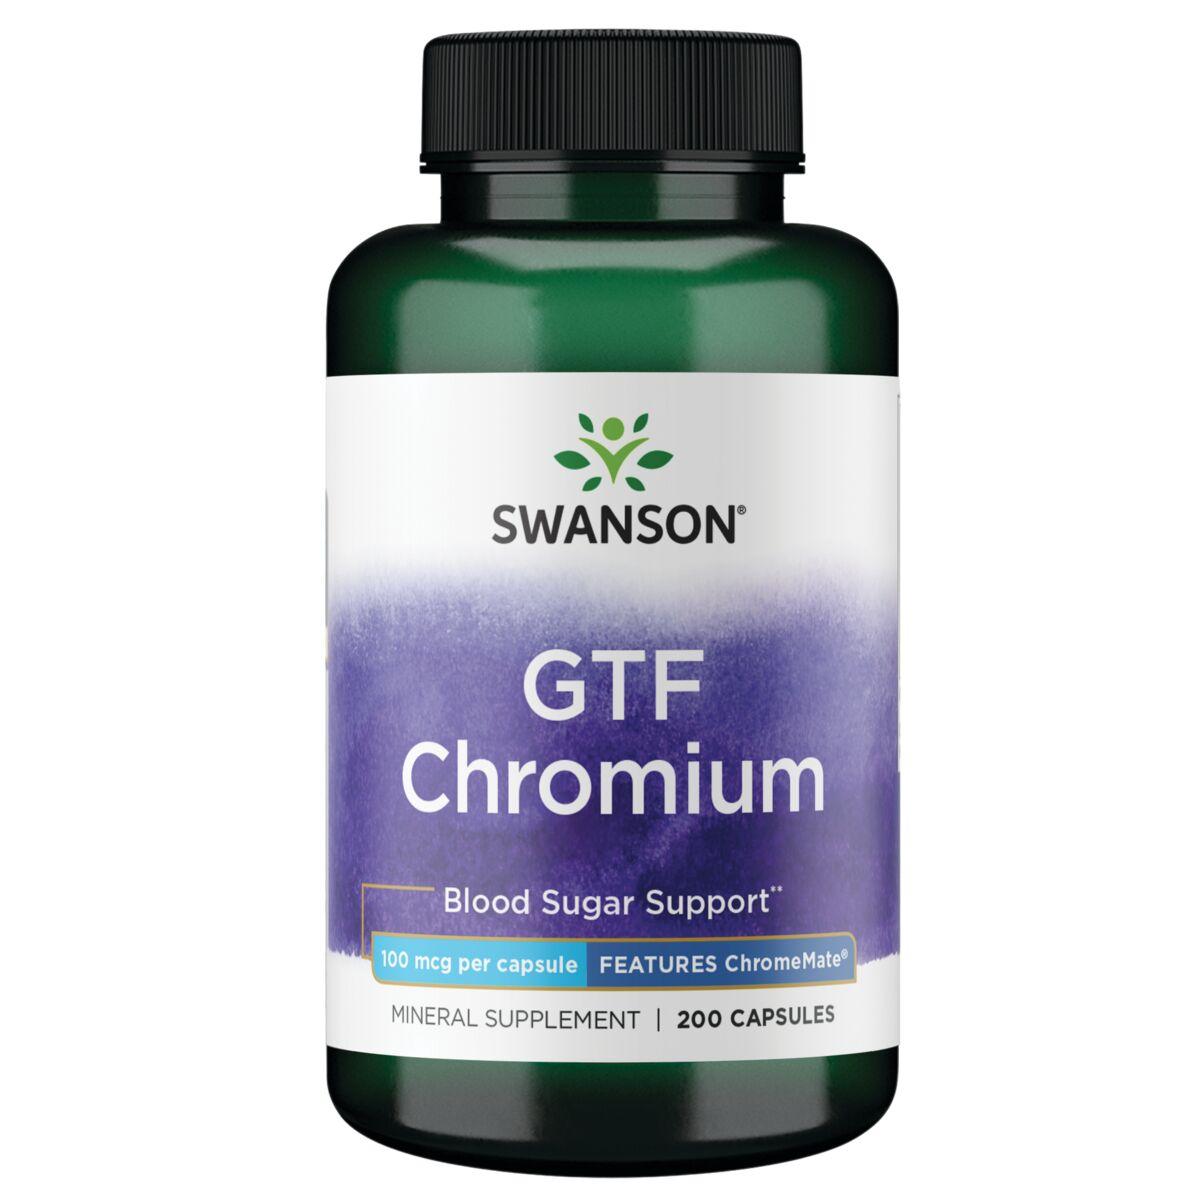 Swanson Premium Gtf Chromium - Features Chromemate Vitamin | 100 mcg | 200 Caps